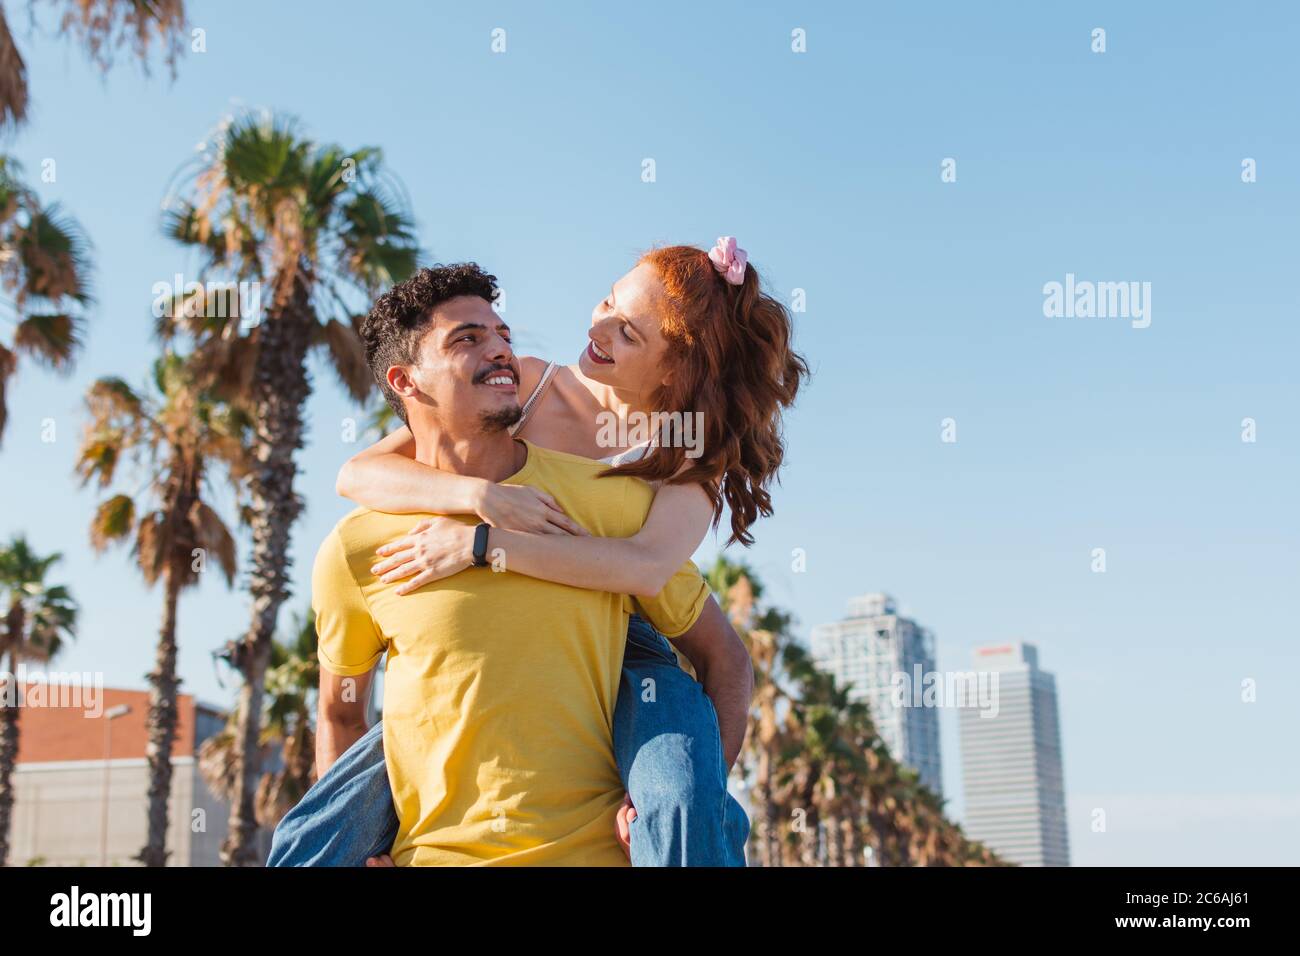 le jeune homme porte sa petite amie sur le dos tout en souriant Banque D'Images